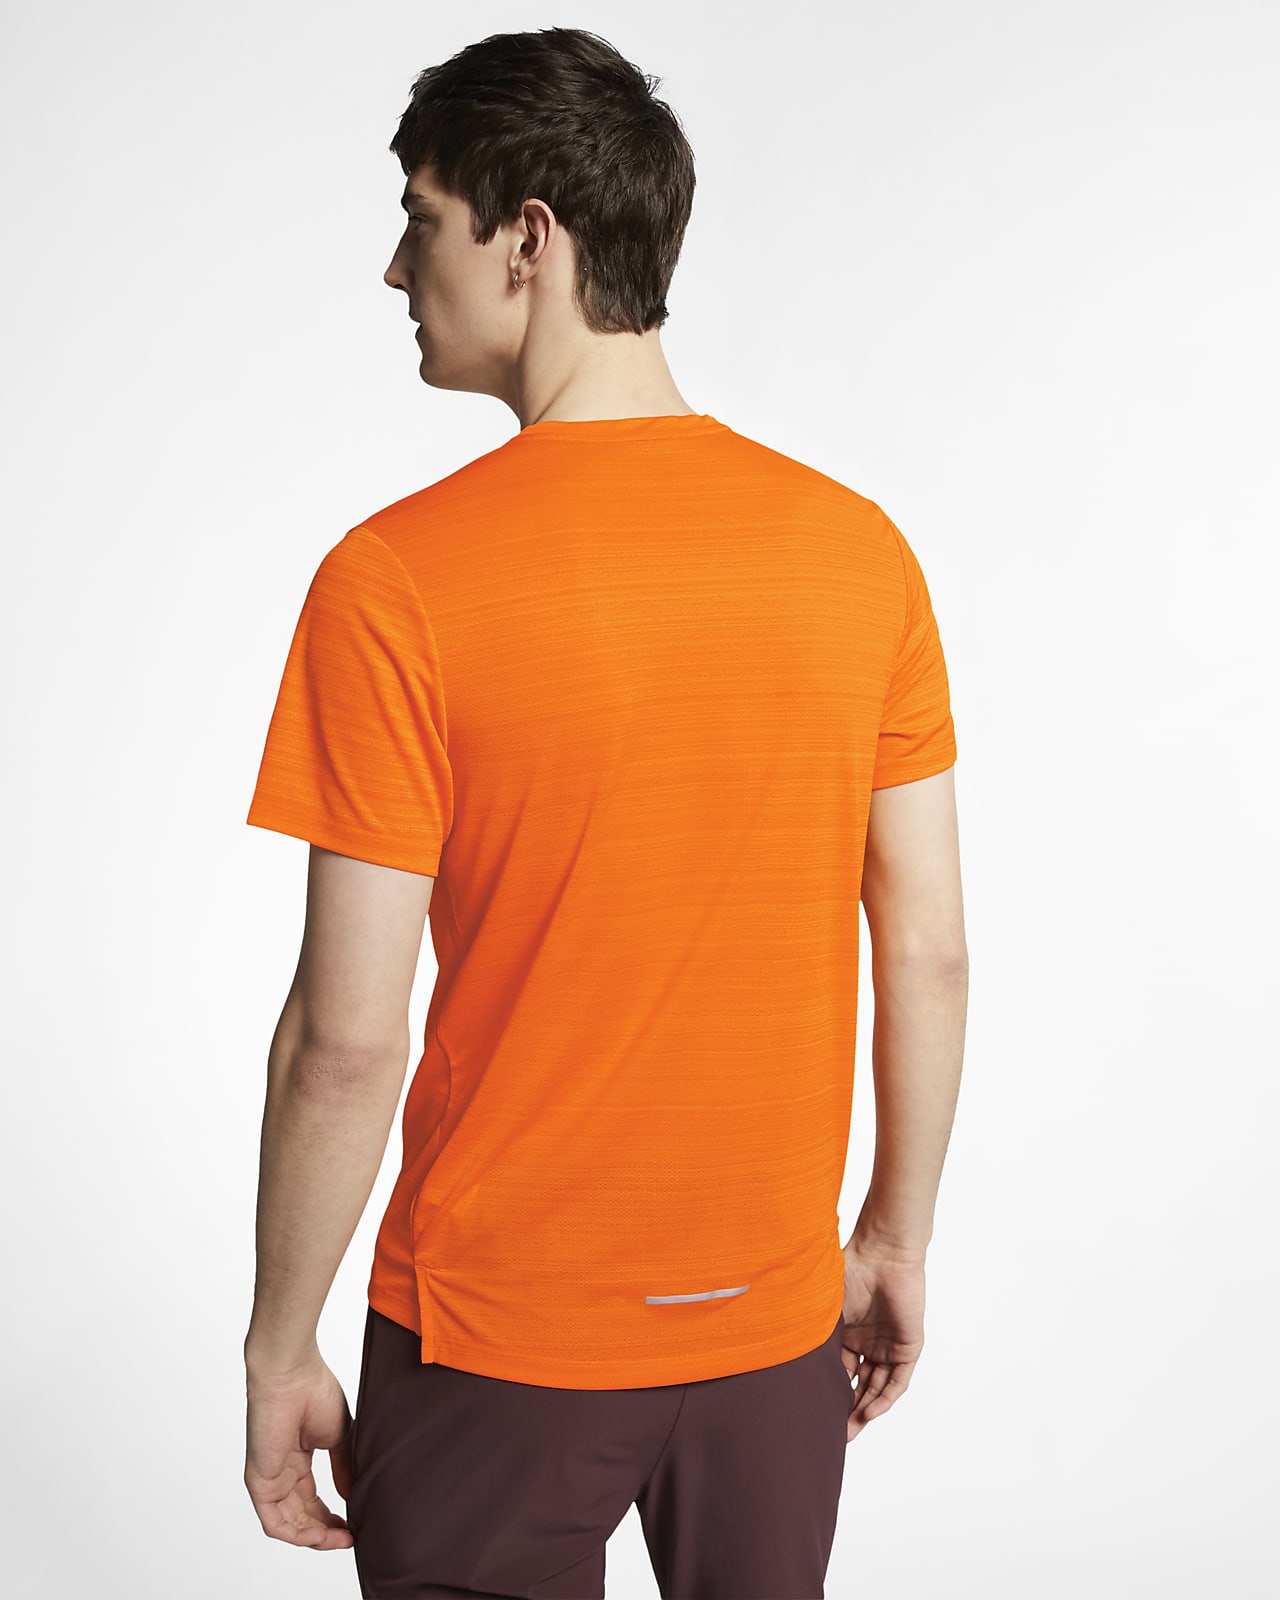 nike orange running top